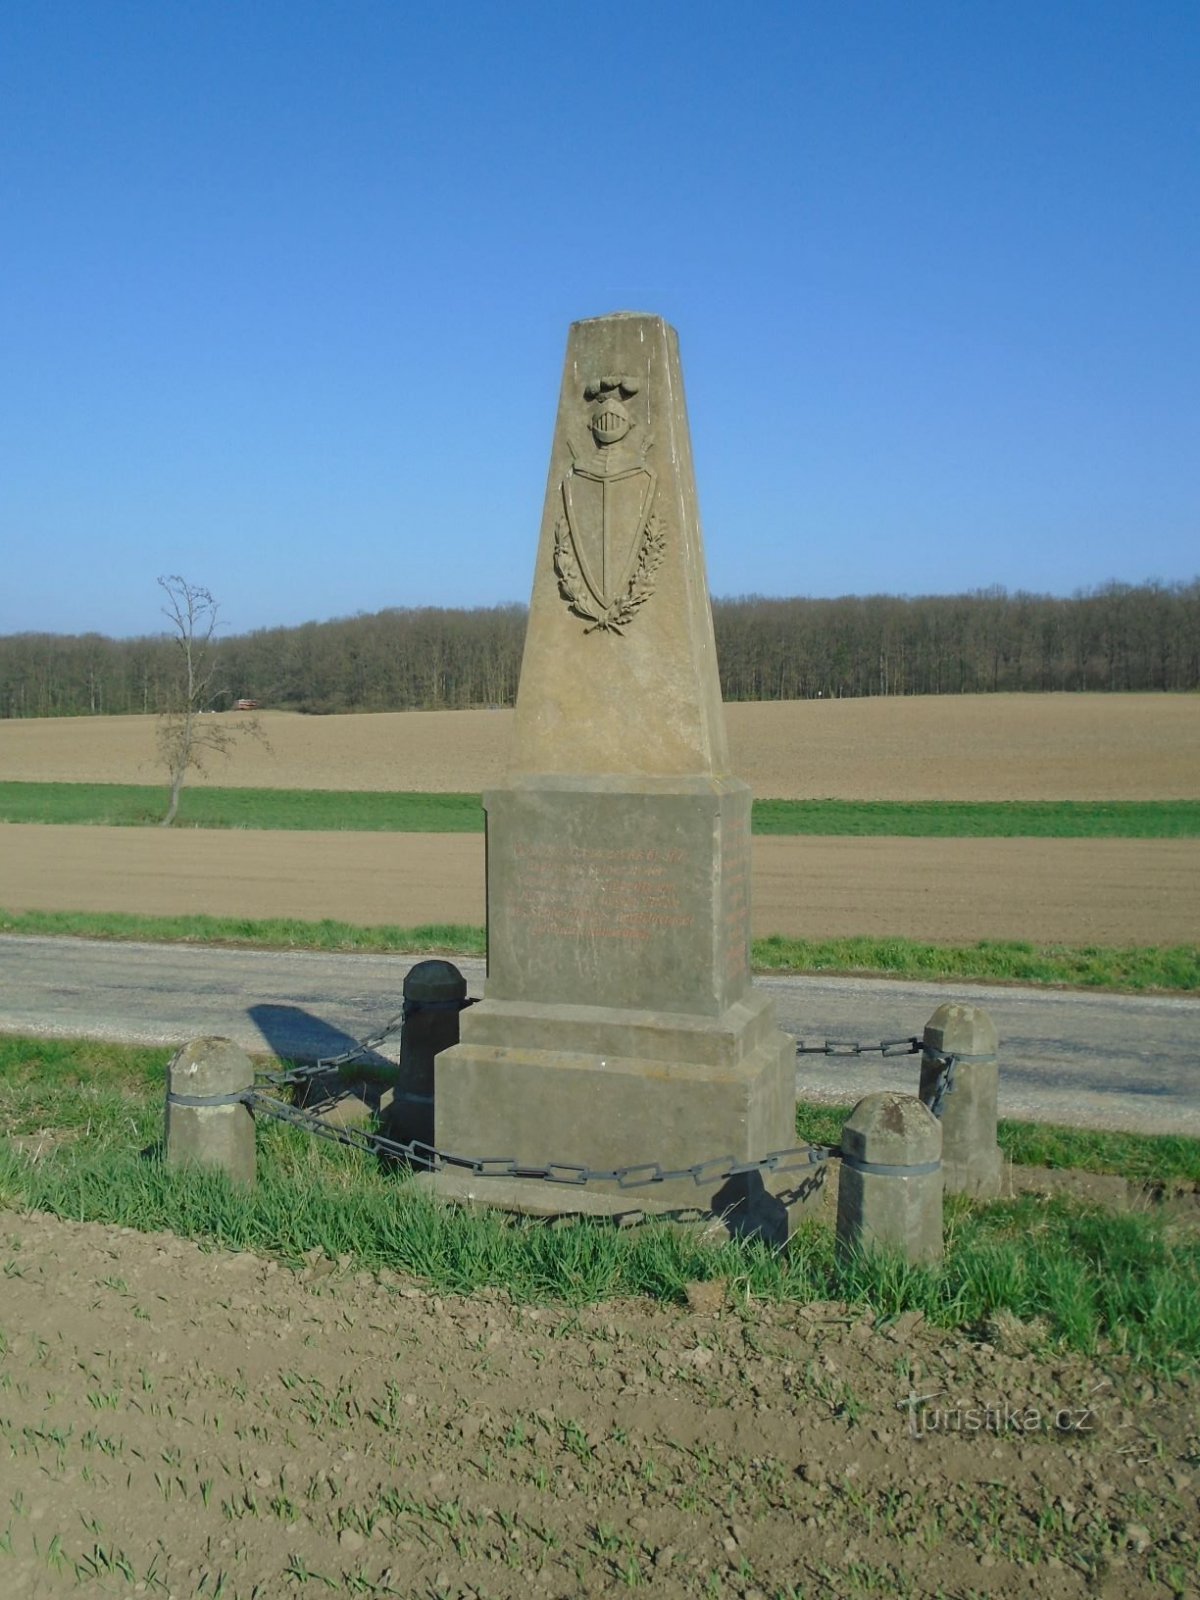 Spomenik austrijskoj 61. pješačkoj pukovniji uz cestu (Čistěves, 7.4.2019. travnja XNUMX.)